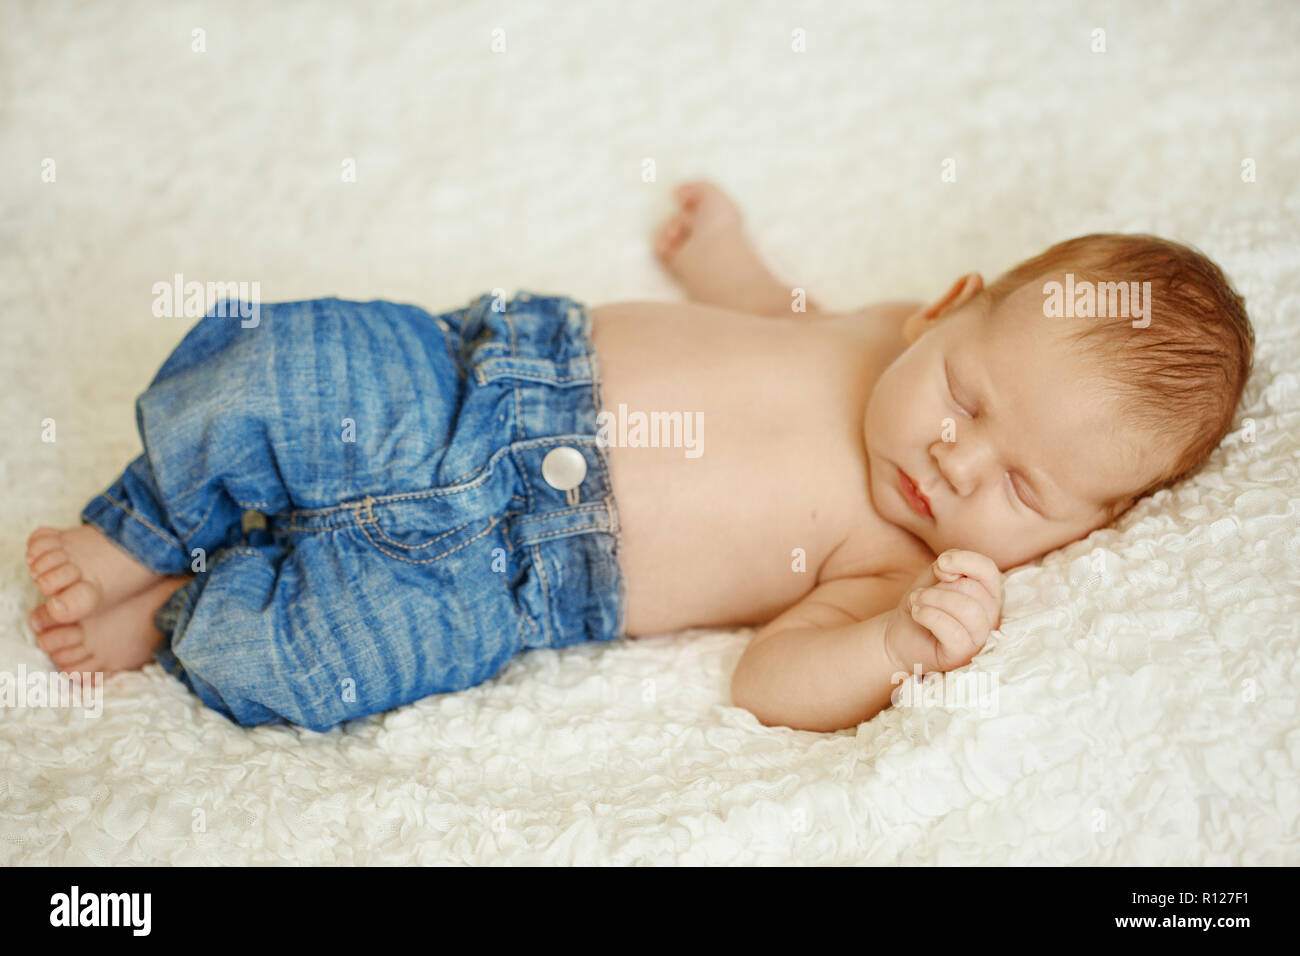 La moda en jeans de bebé recién nacido duerme en la cama. Moda para Fotografía de stock Alamy